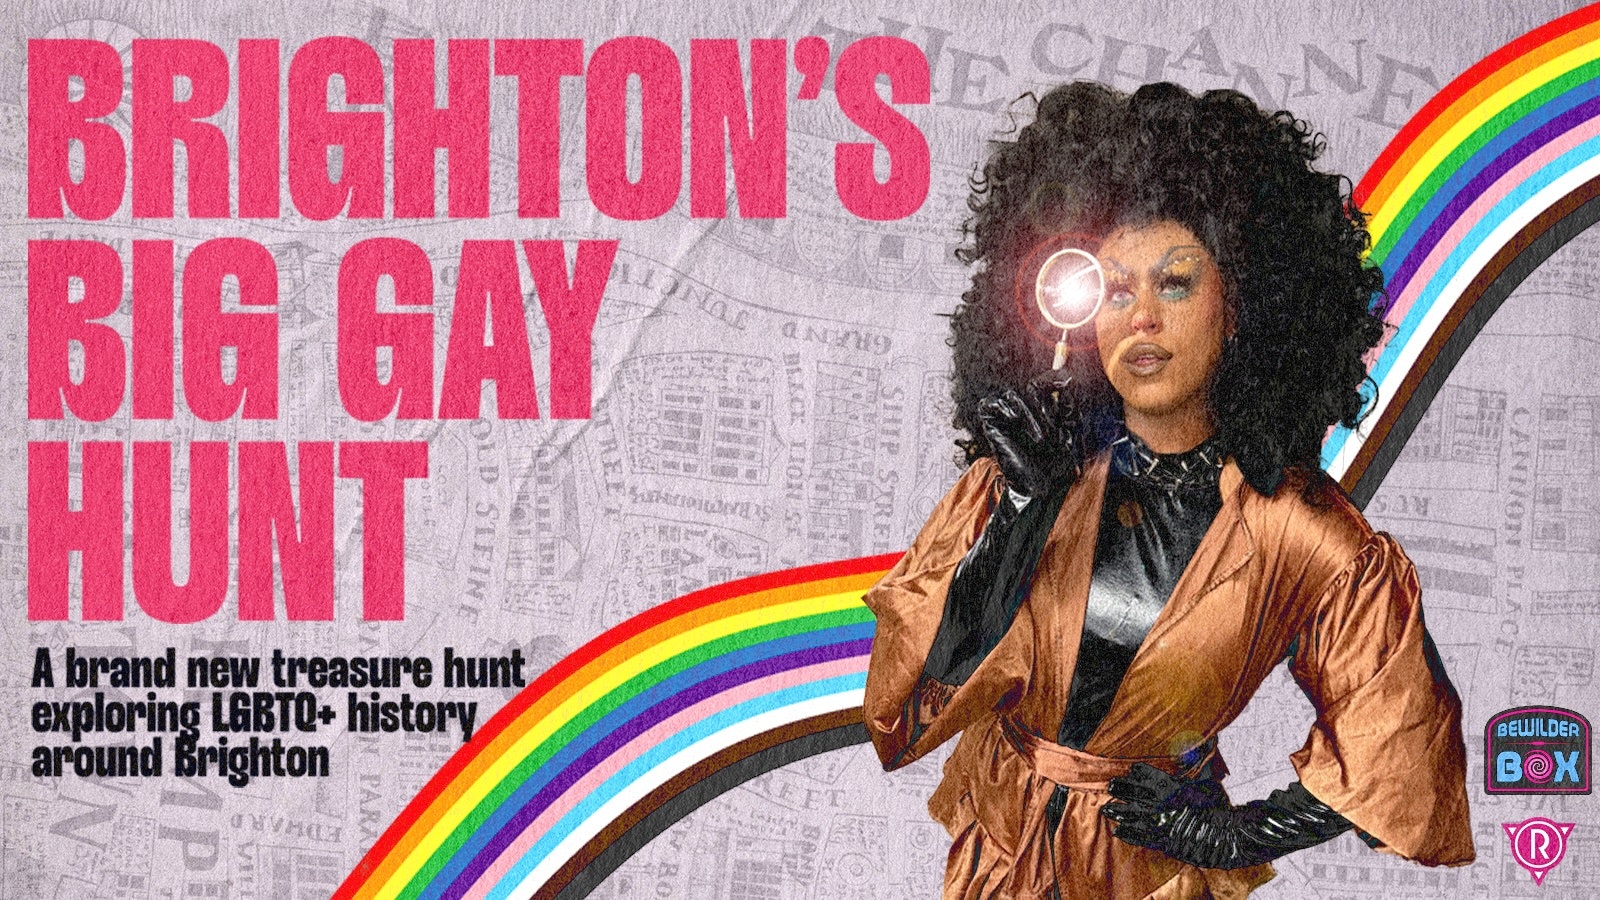 Brighton’s Big Gay Hunt: An Outdoor Puzzle Adventure – Weekend 3 & 4